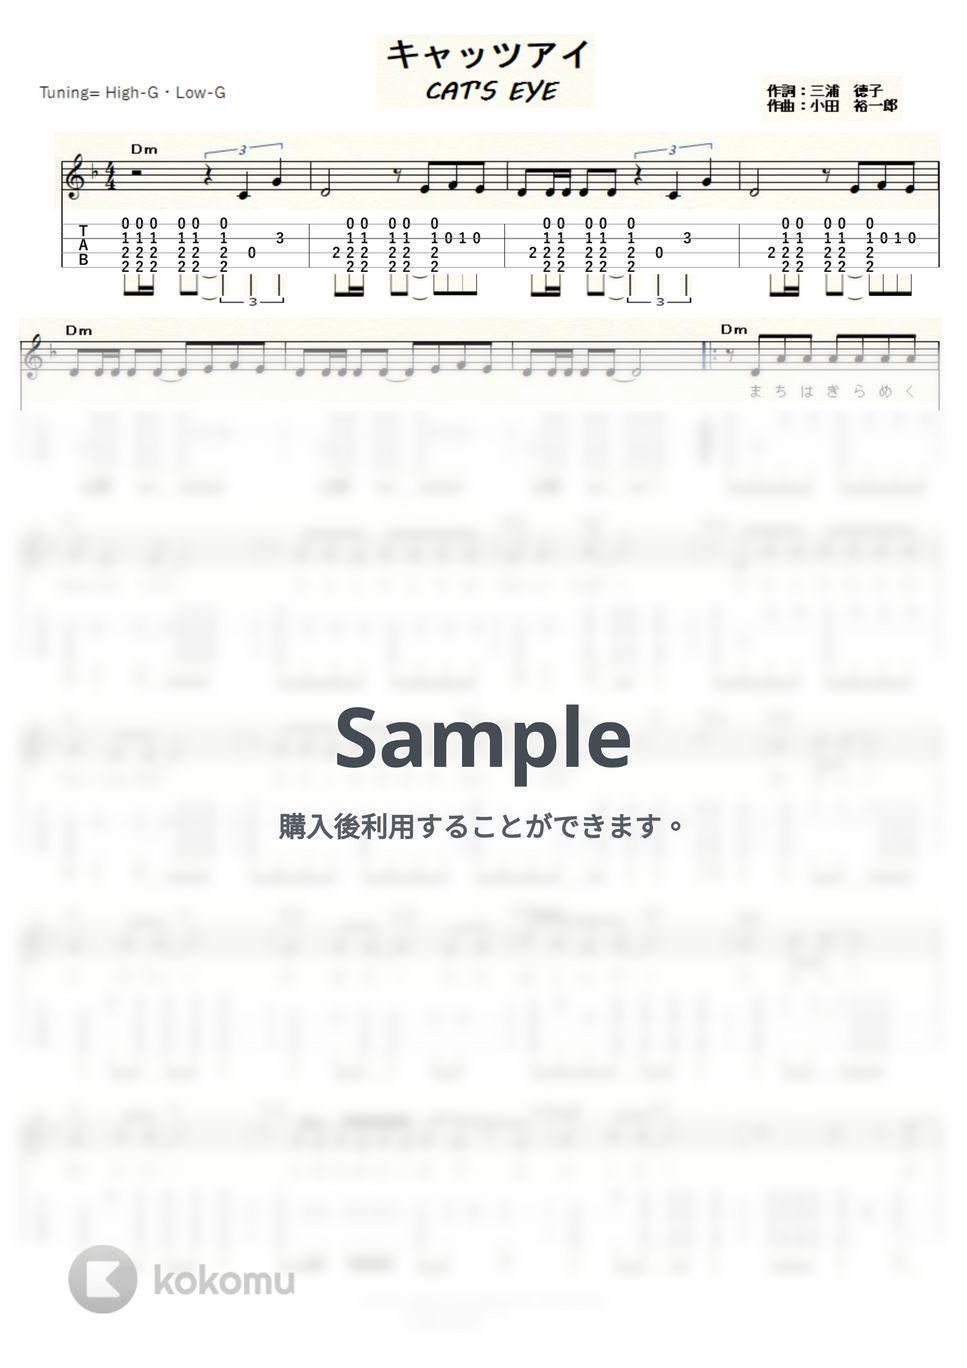 杏里 - キャッツアイ～CAT'S EYE～ (ｳｸﾚﾚｿﾛ / High-G,Low-G / 中級) by ukulelepapa